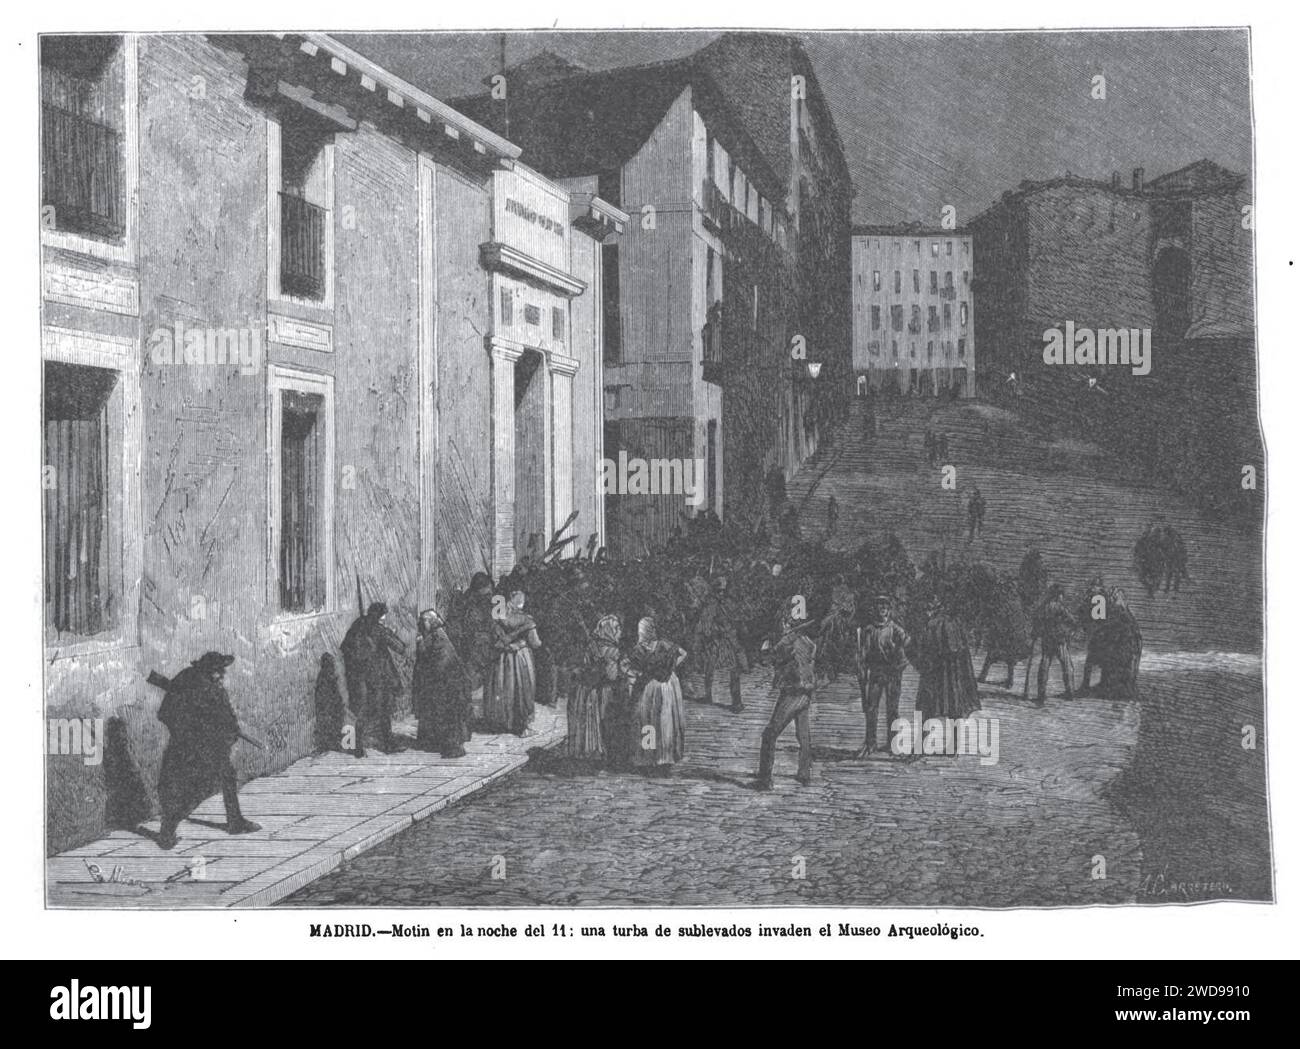 1872-12-24, La Ilustración Española y Americana, Madrid, Motín en la noche del 11, una turba de sublevados invaden el Museo Arqueológico. Stock Photo